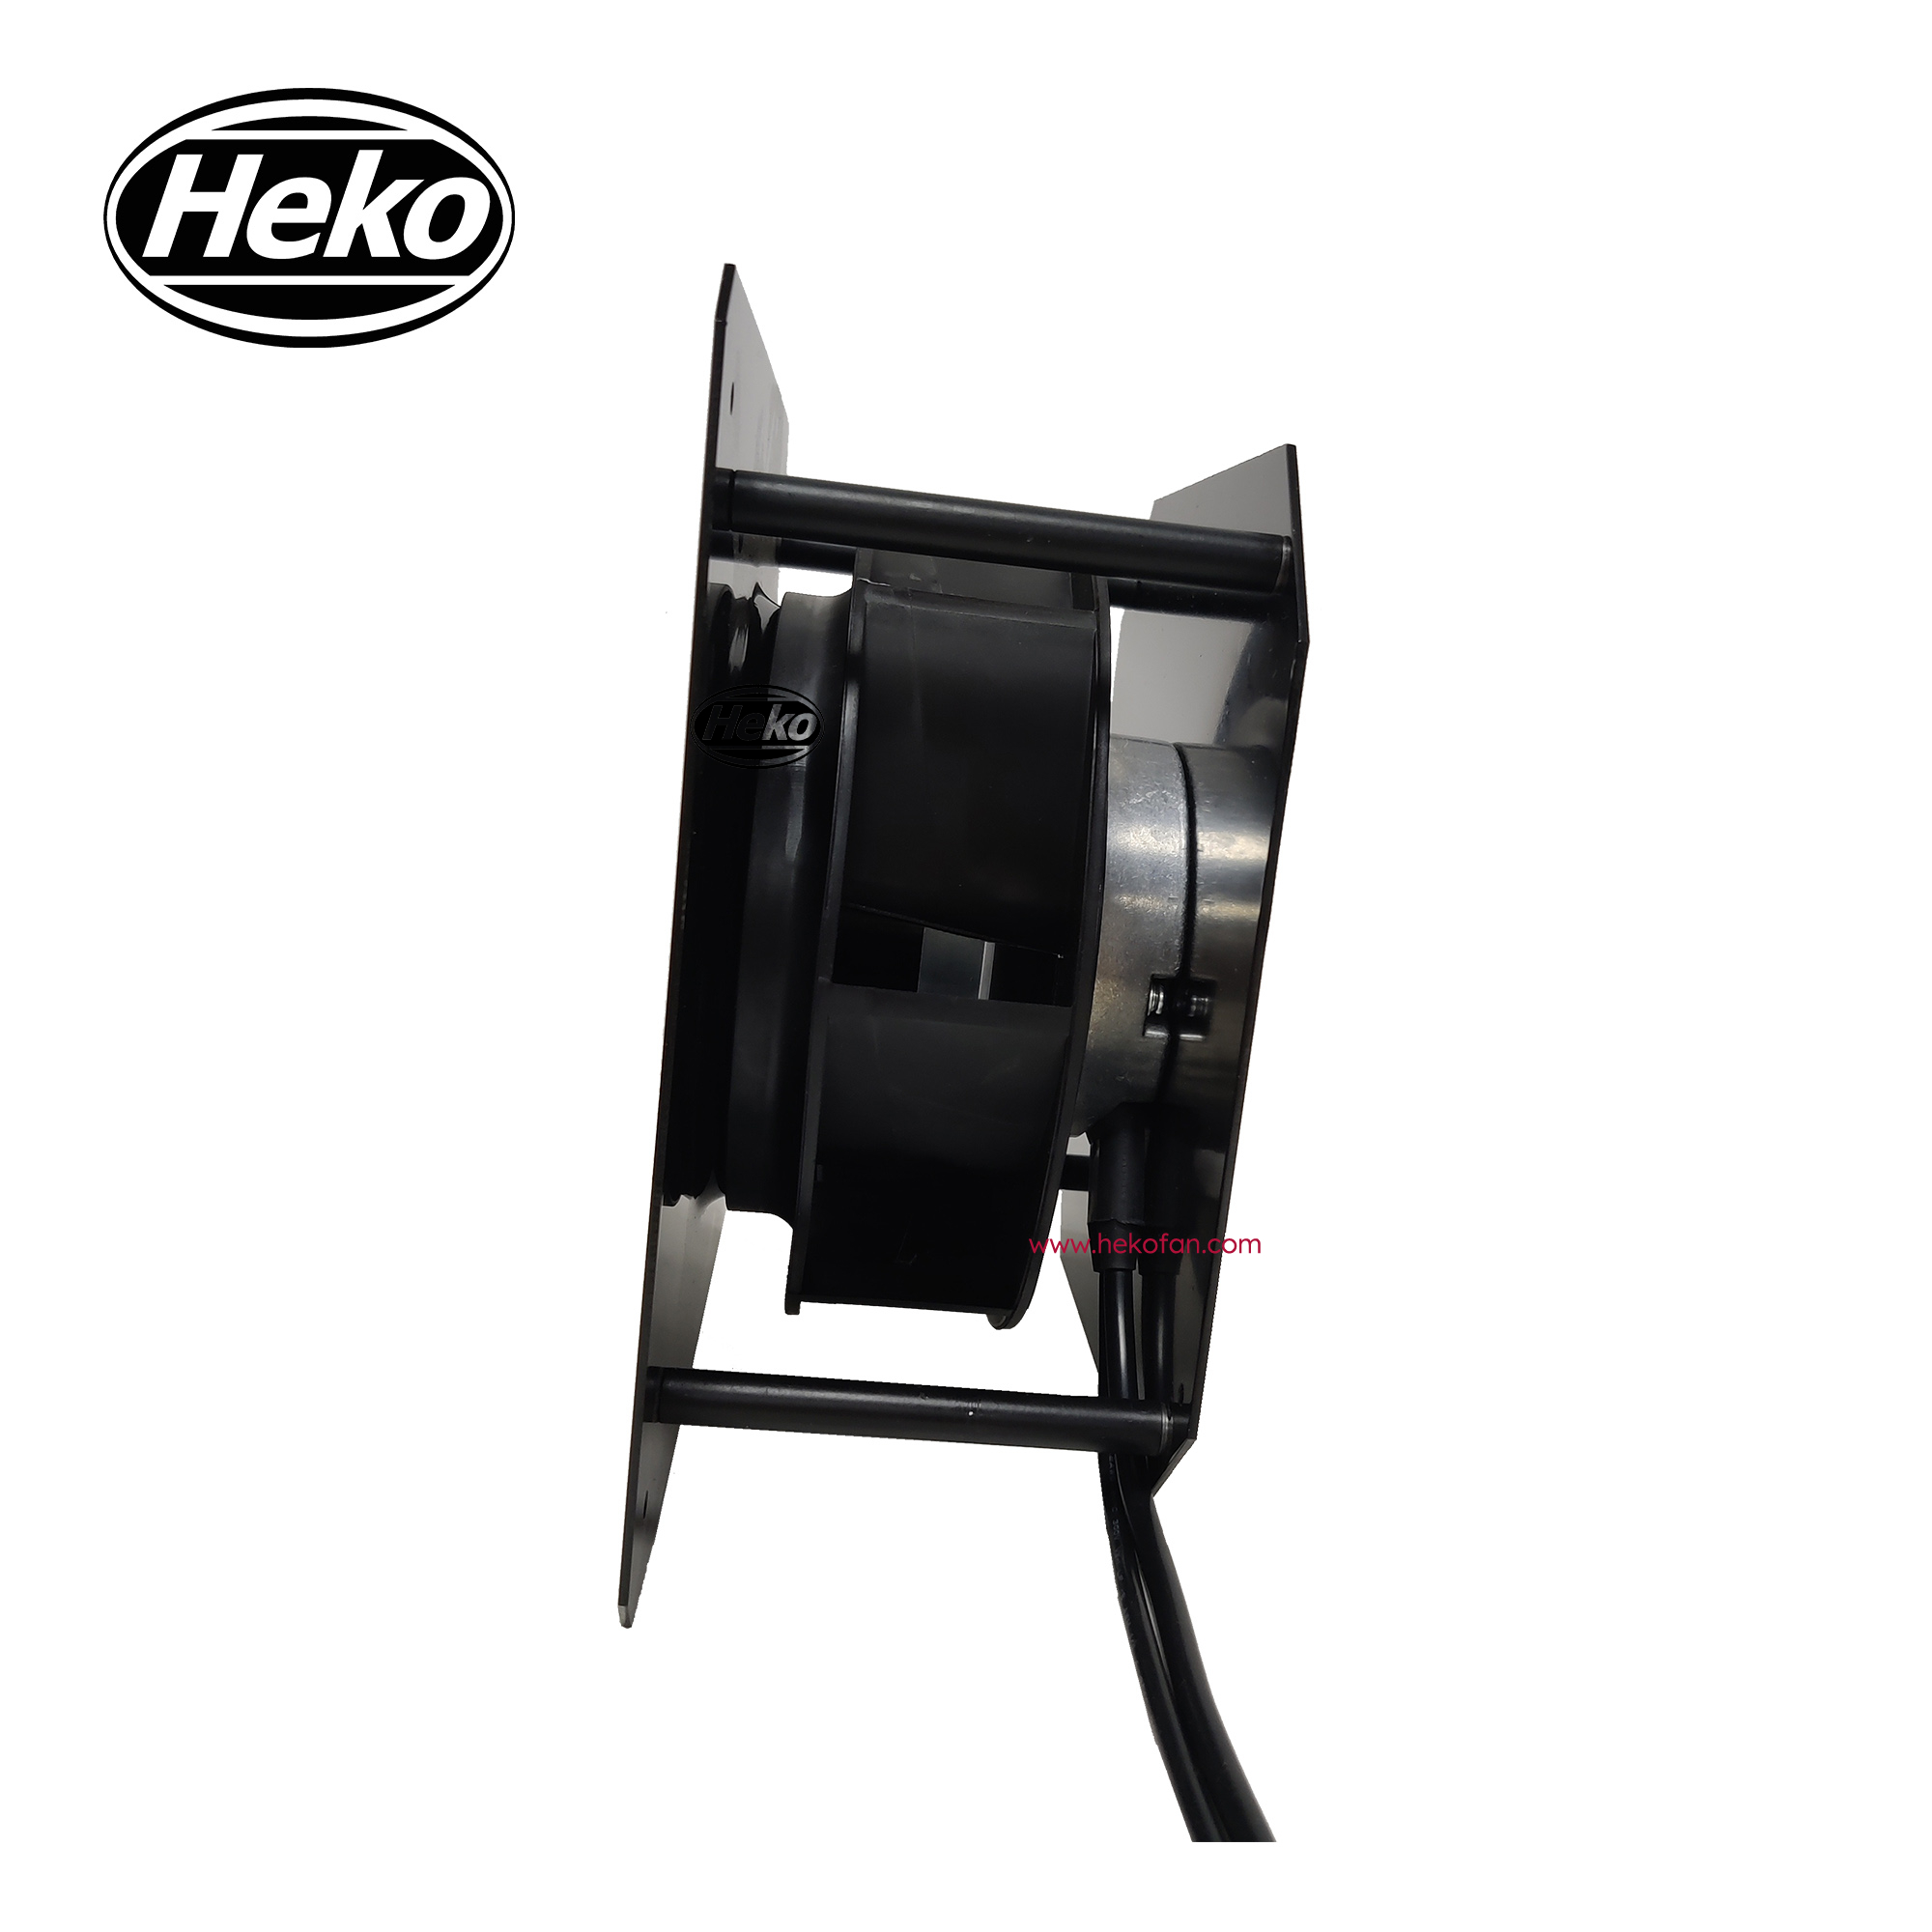 HEKO EC175mm se puede personalizar ventilador centrífugo curvado hacia atrás